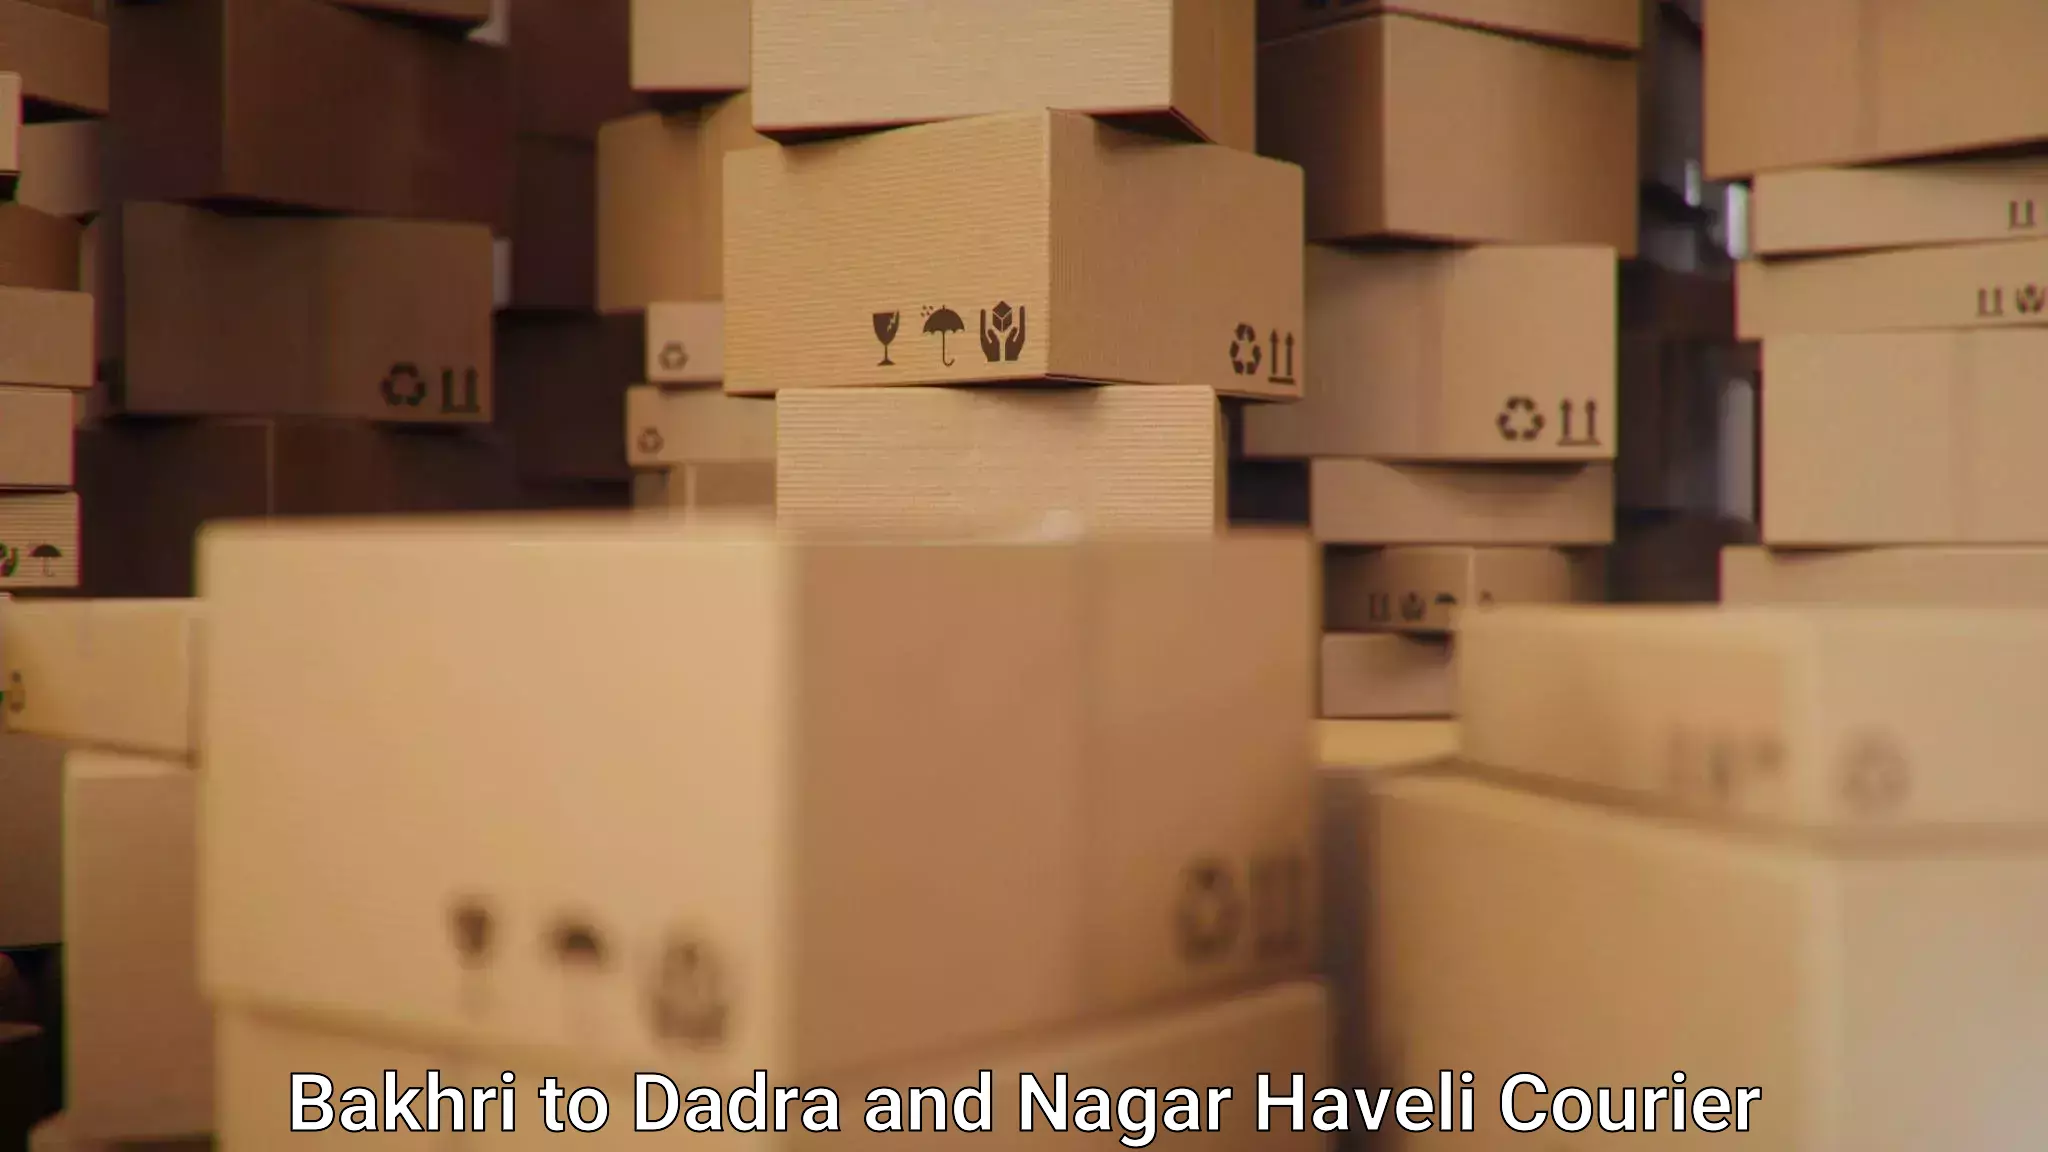 Reliable shipping partners Bakhri to Dadra and Nagar Haveli